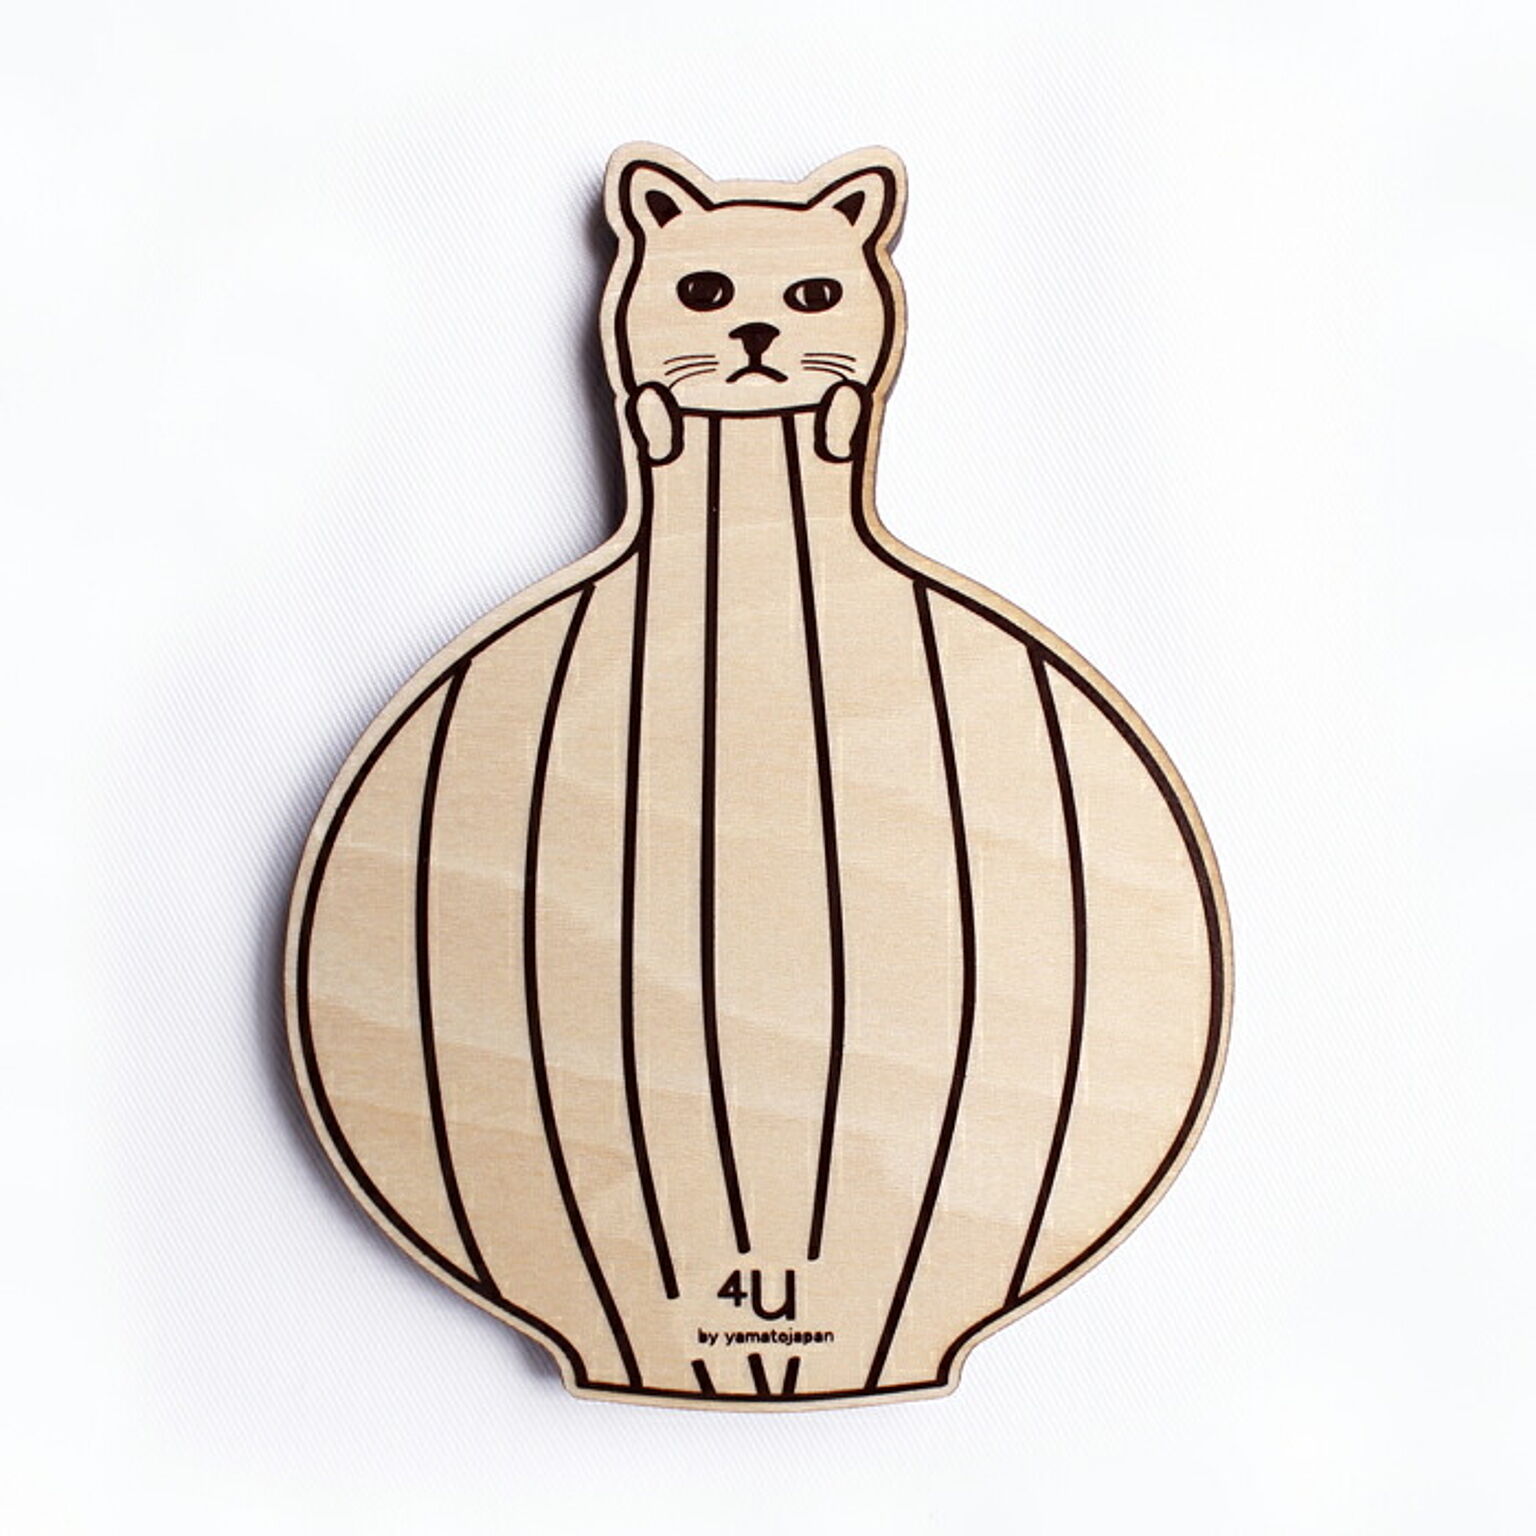 コースター 木製 北欧 日本製 corster vase animals ウサギ ネコ クマ イヌ 木 新築祝い お祝い 誕生日 ギフト